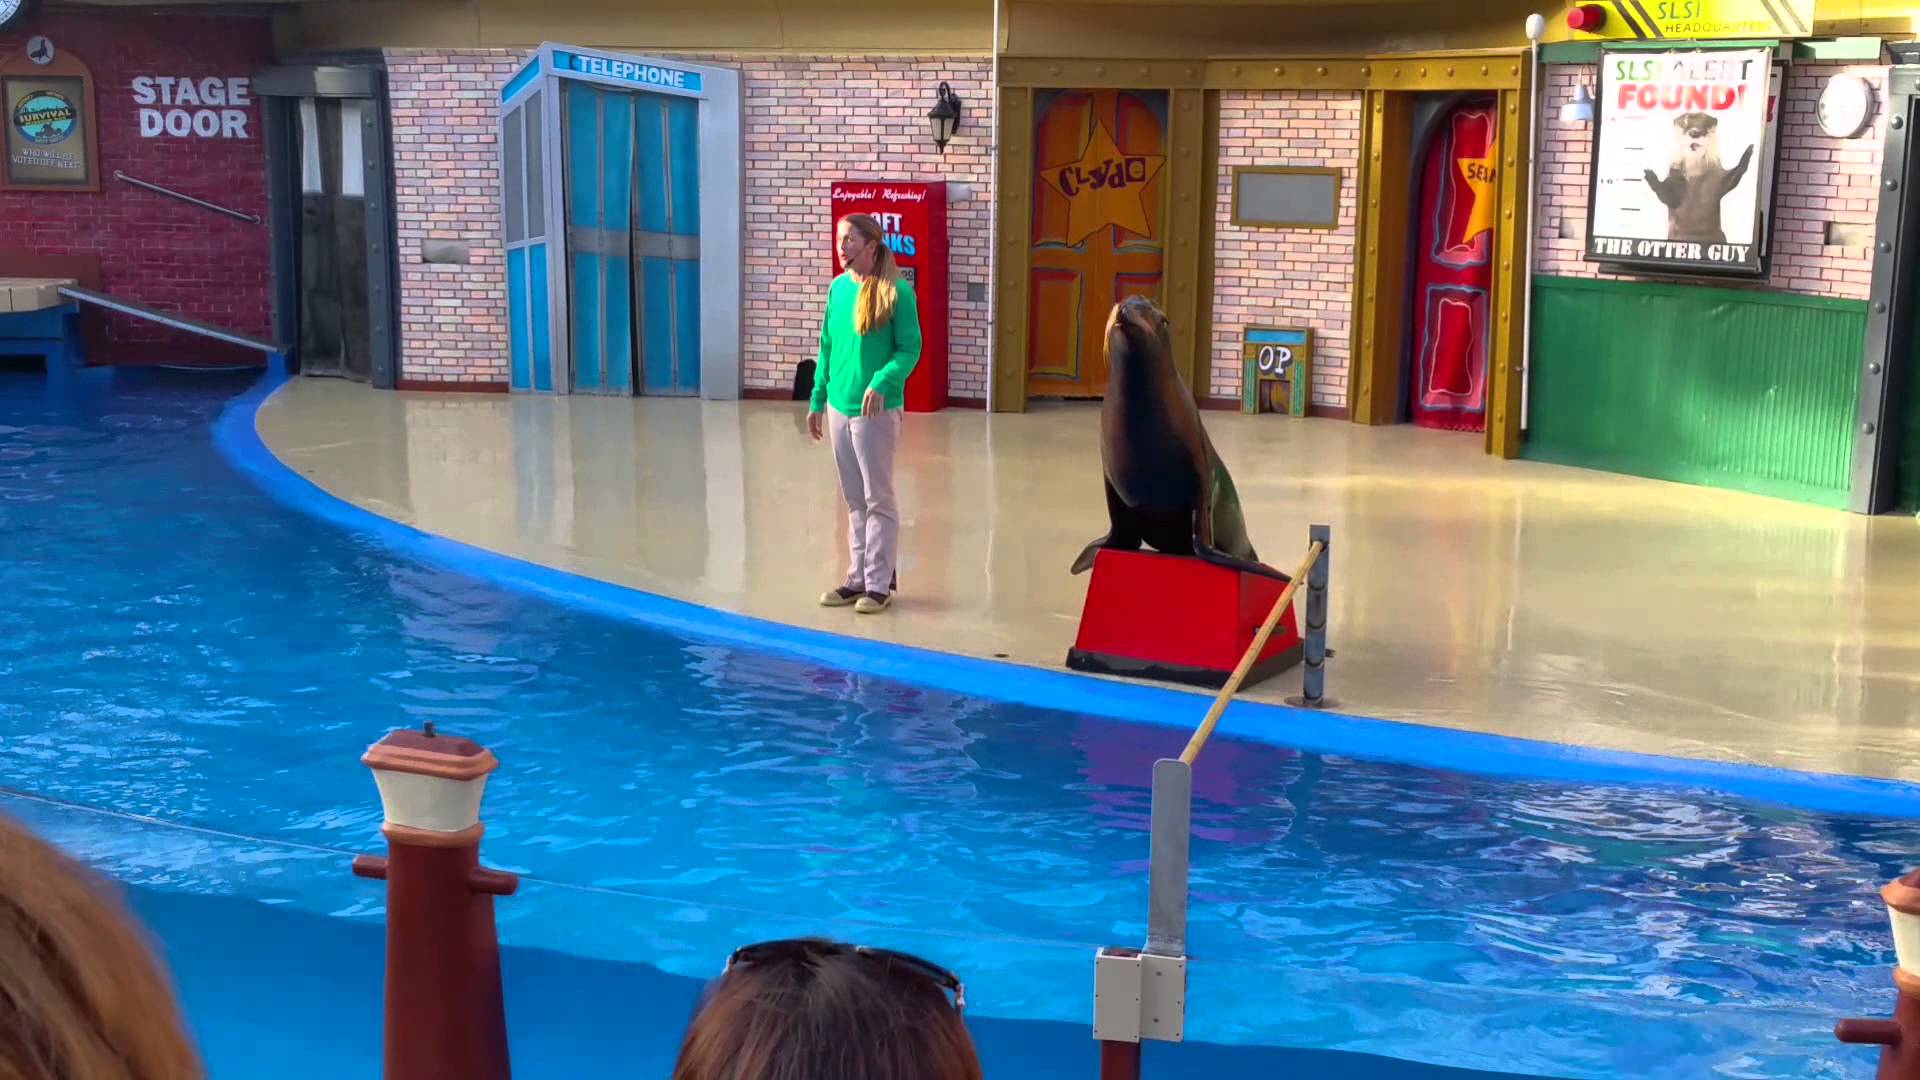 Sea world Sea Lion show Live 2015 - YouTube